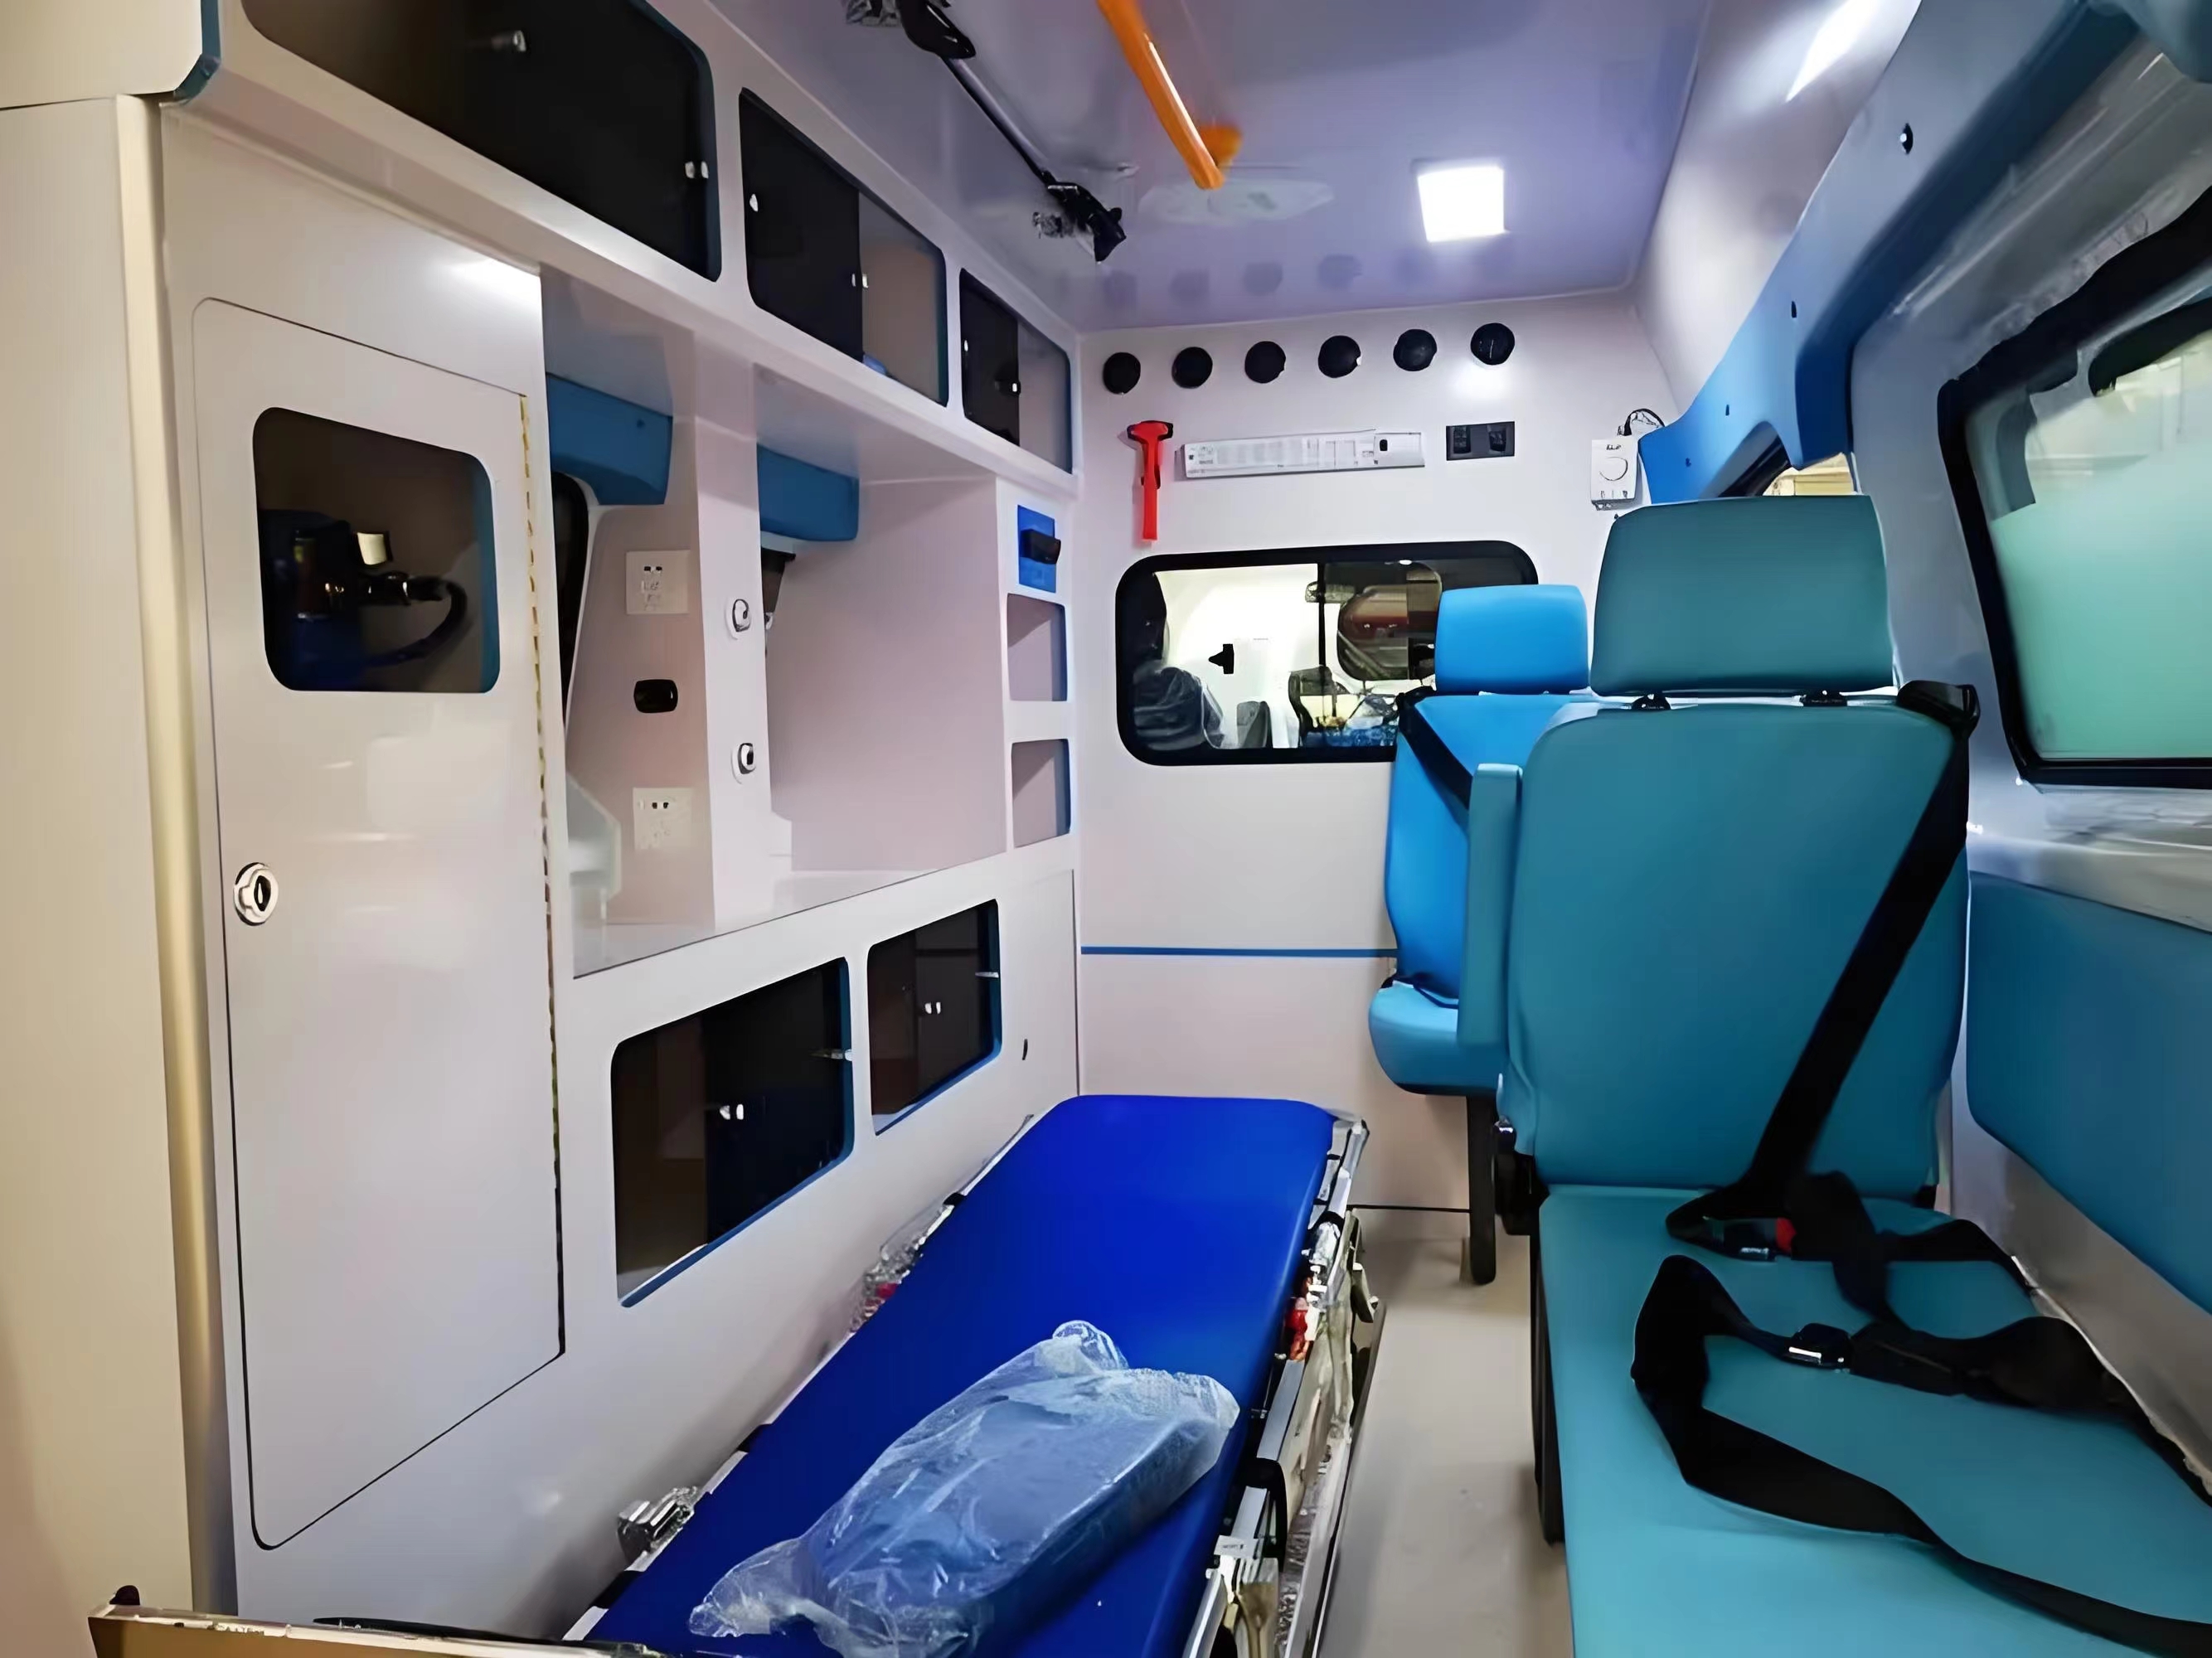 柳州接送病人出院-跨省救护车出租-紧急就近派车